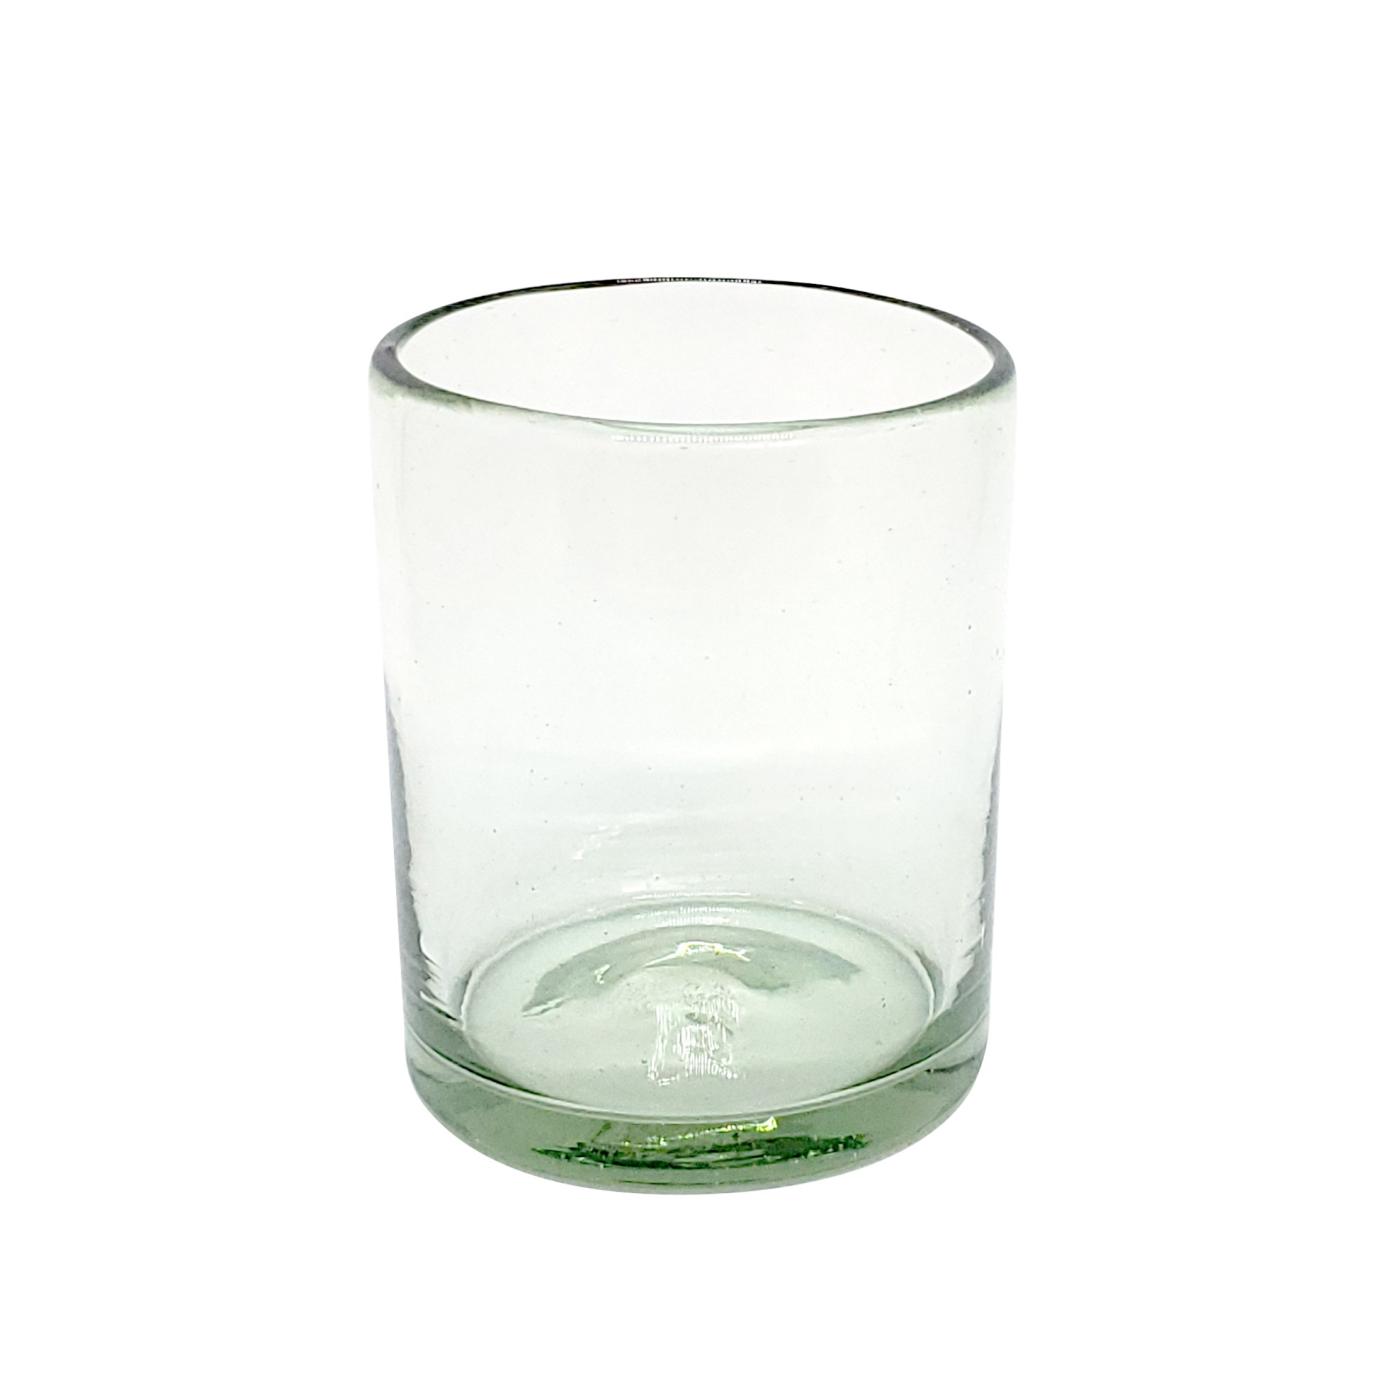 Color Transparente al Mayoreo / vasos chicos transparentes, 10 oz, Vidrio Reciclado, Libre de Plomo y Toxinas / Para una apariencia ms tradicional, stos vasos de vidrio soplado son creados de manera 100% artesanal.